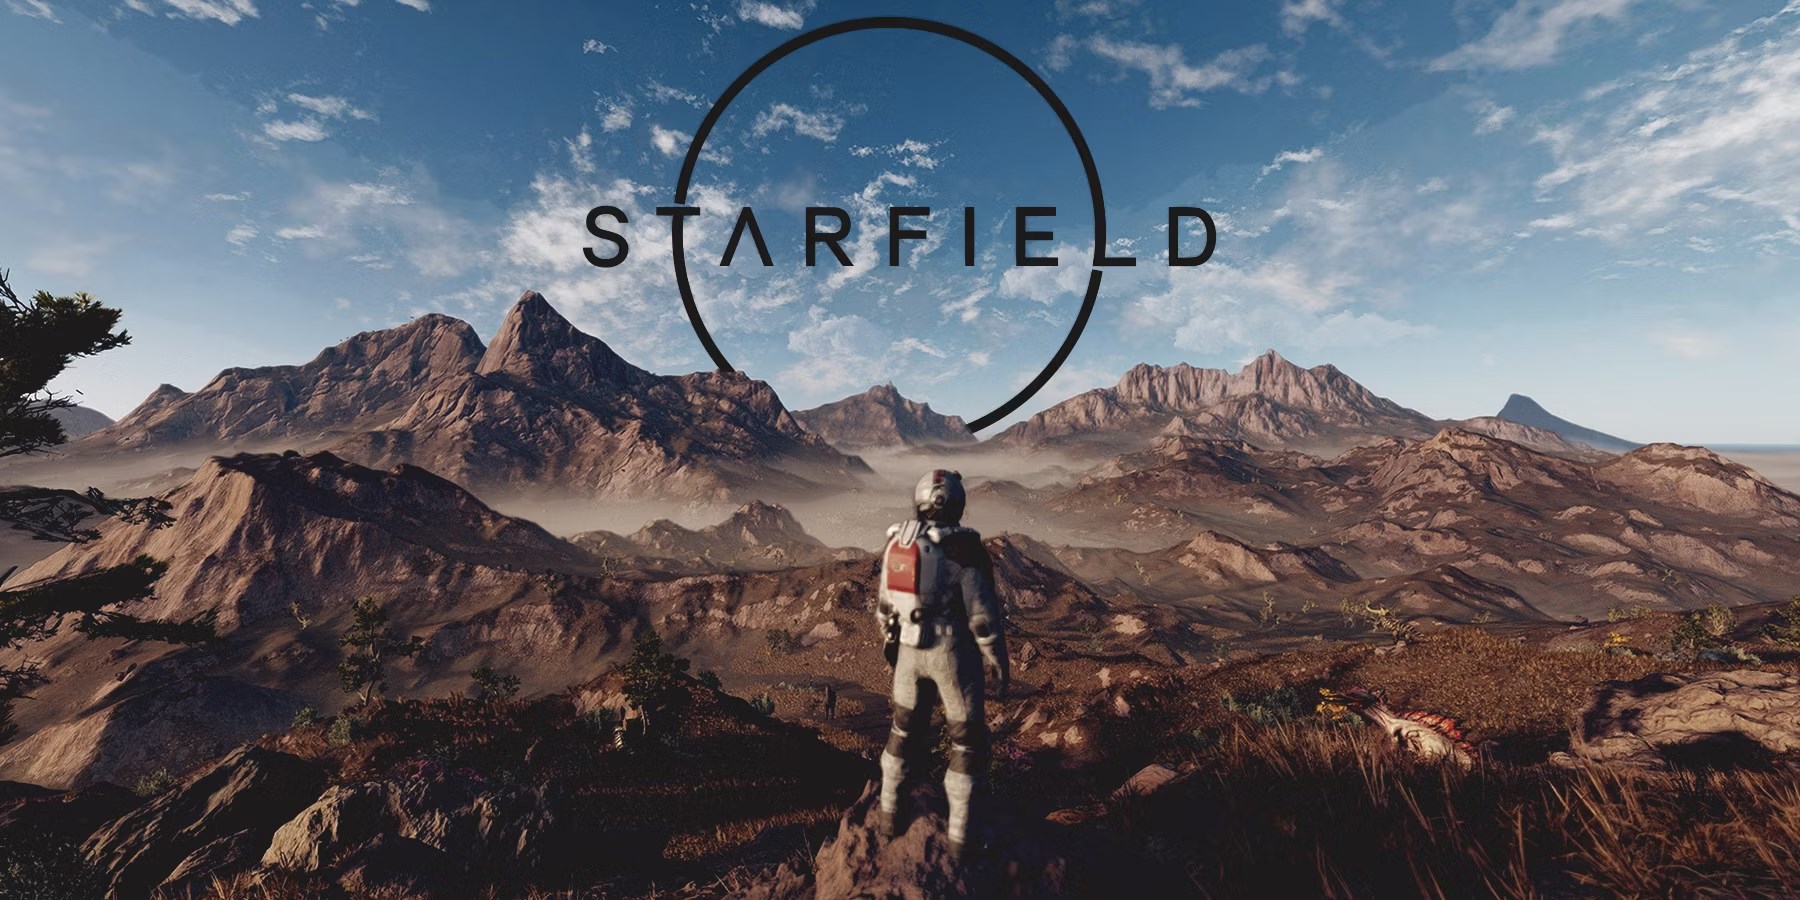 Starfield temalı Xbox kontrolcüsü geliyor